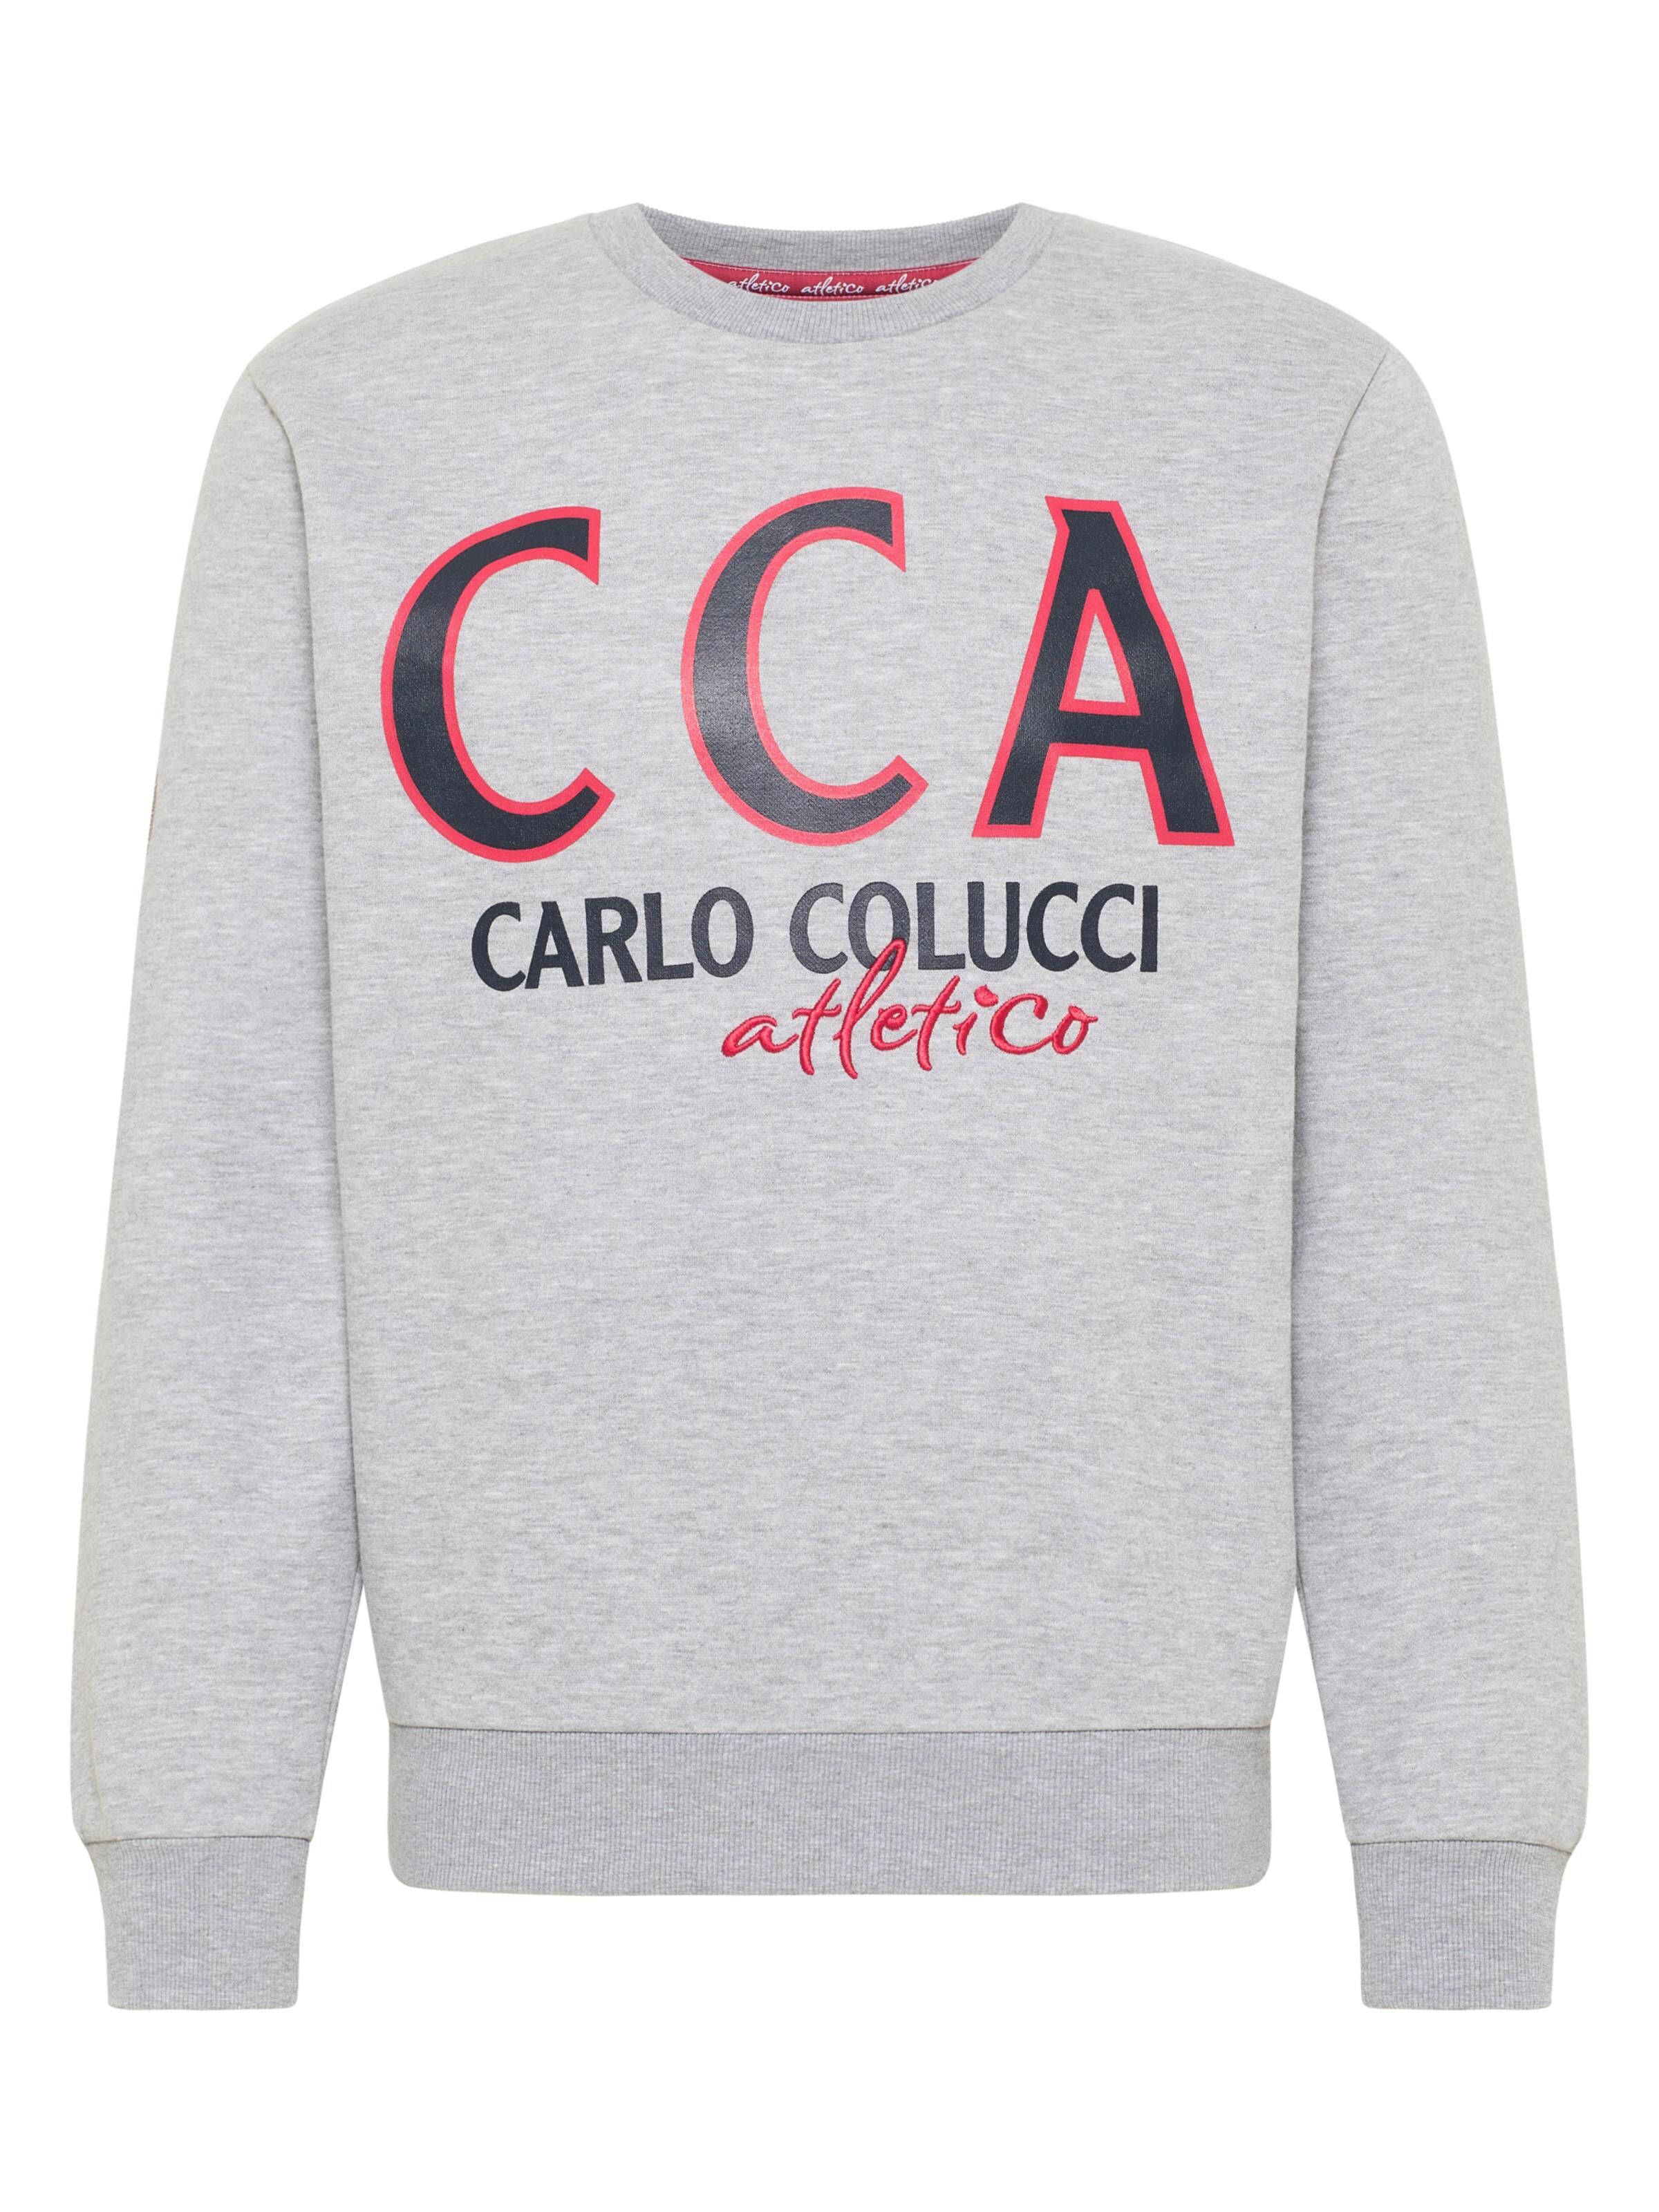 CARLO COLUCCI Atletico Sweatshirt